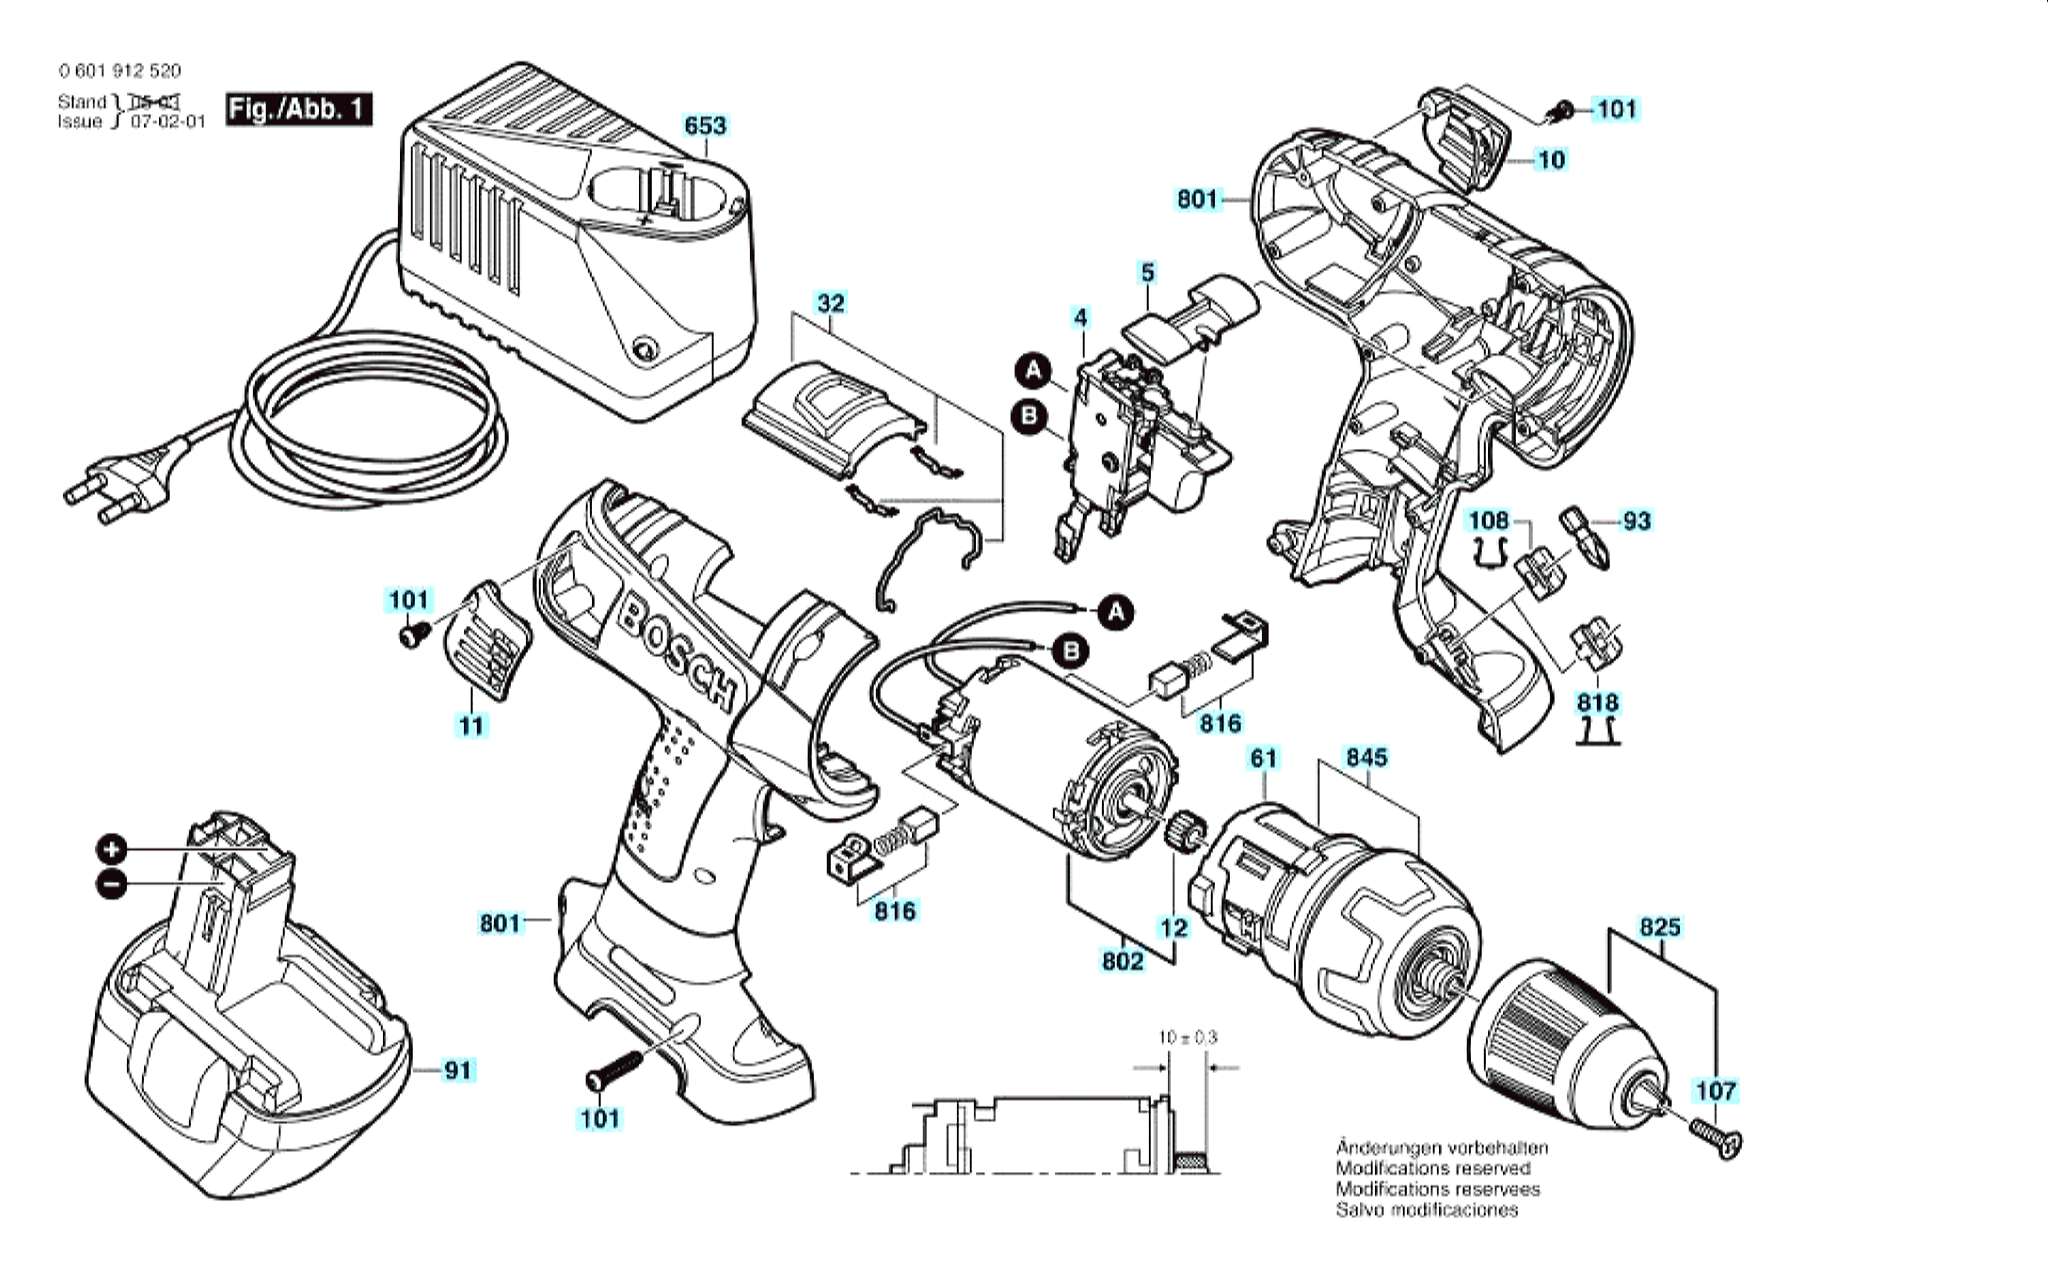 Запчасти, схема и деталировка Bosch GSR 12 VE-2 (ТИП 0601912520)